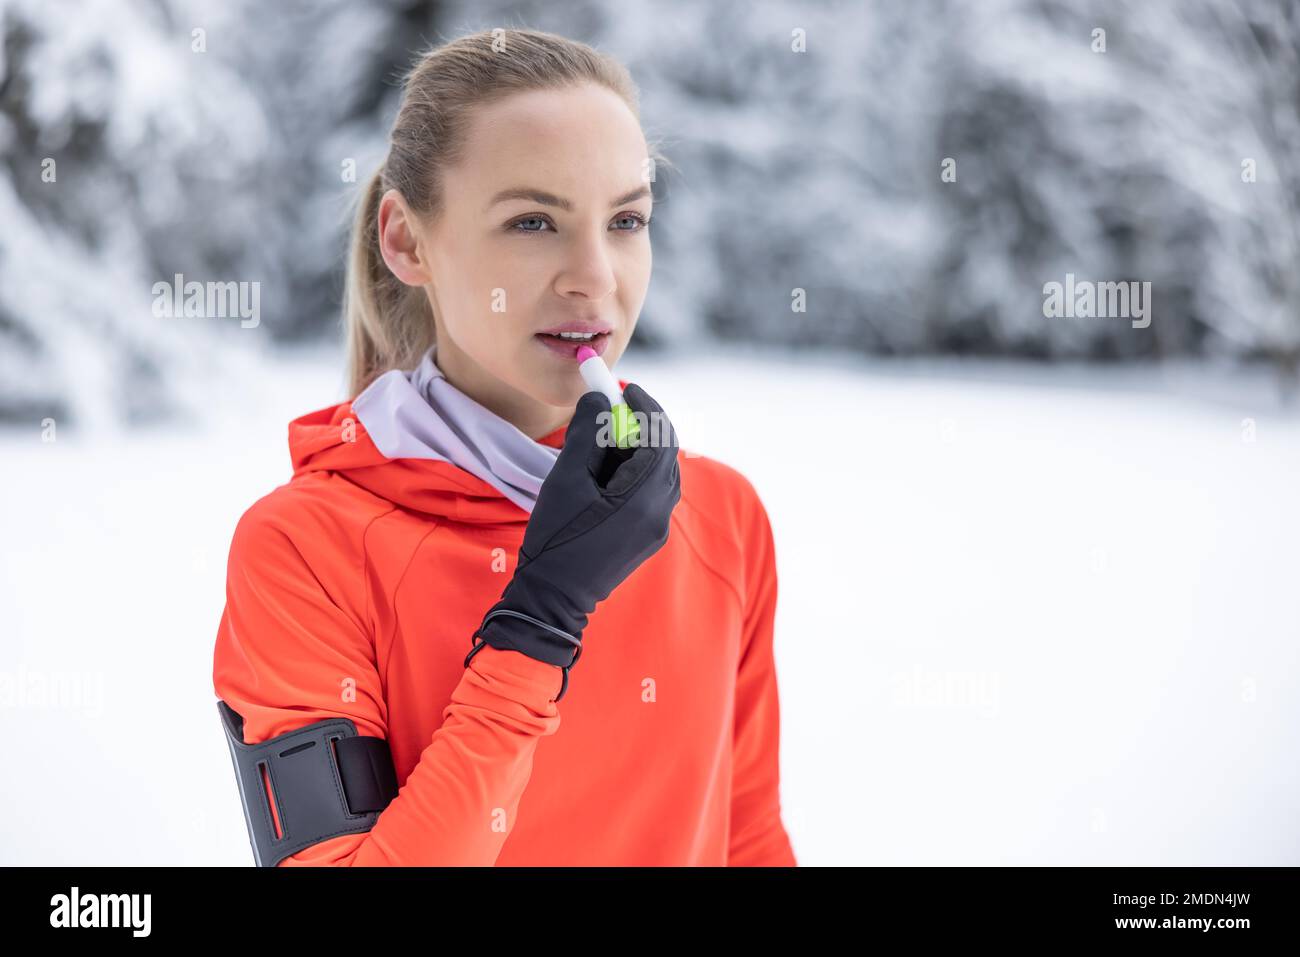 Una joven corredor aplica bálsamo protector a sus labios debido al clima helado, la prevención de labios agrietados y secos. Foto de stock